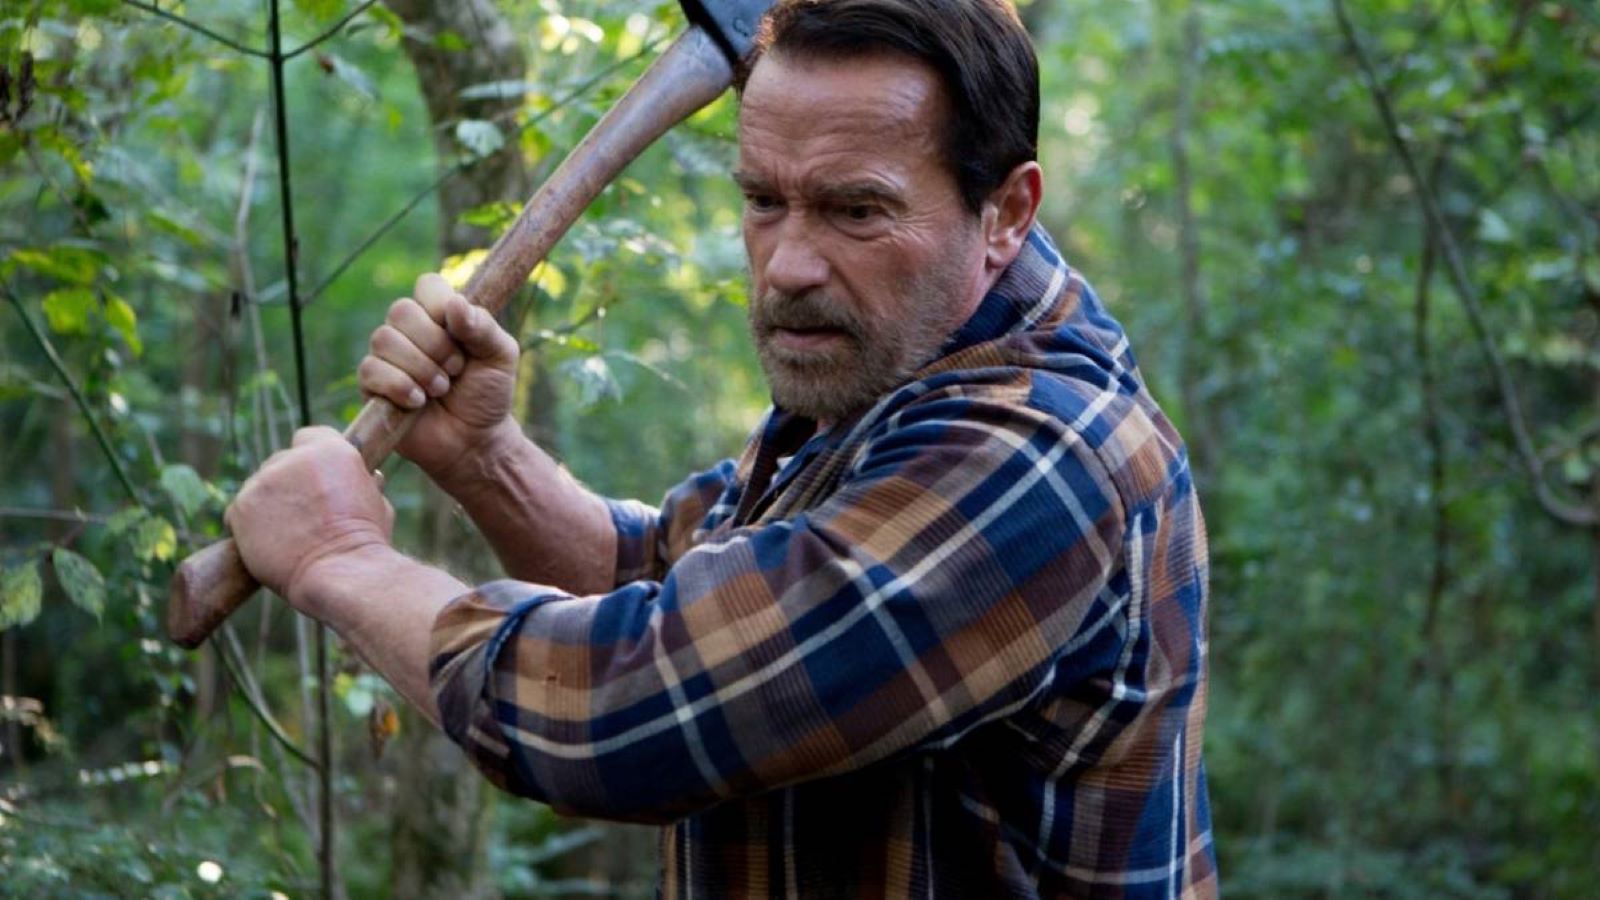 Contagious stasera su Iris: cast e trama del film horror di fantascienza con Arnold Schwarzenegger